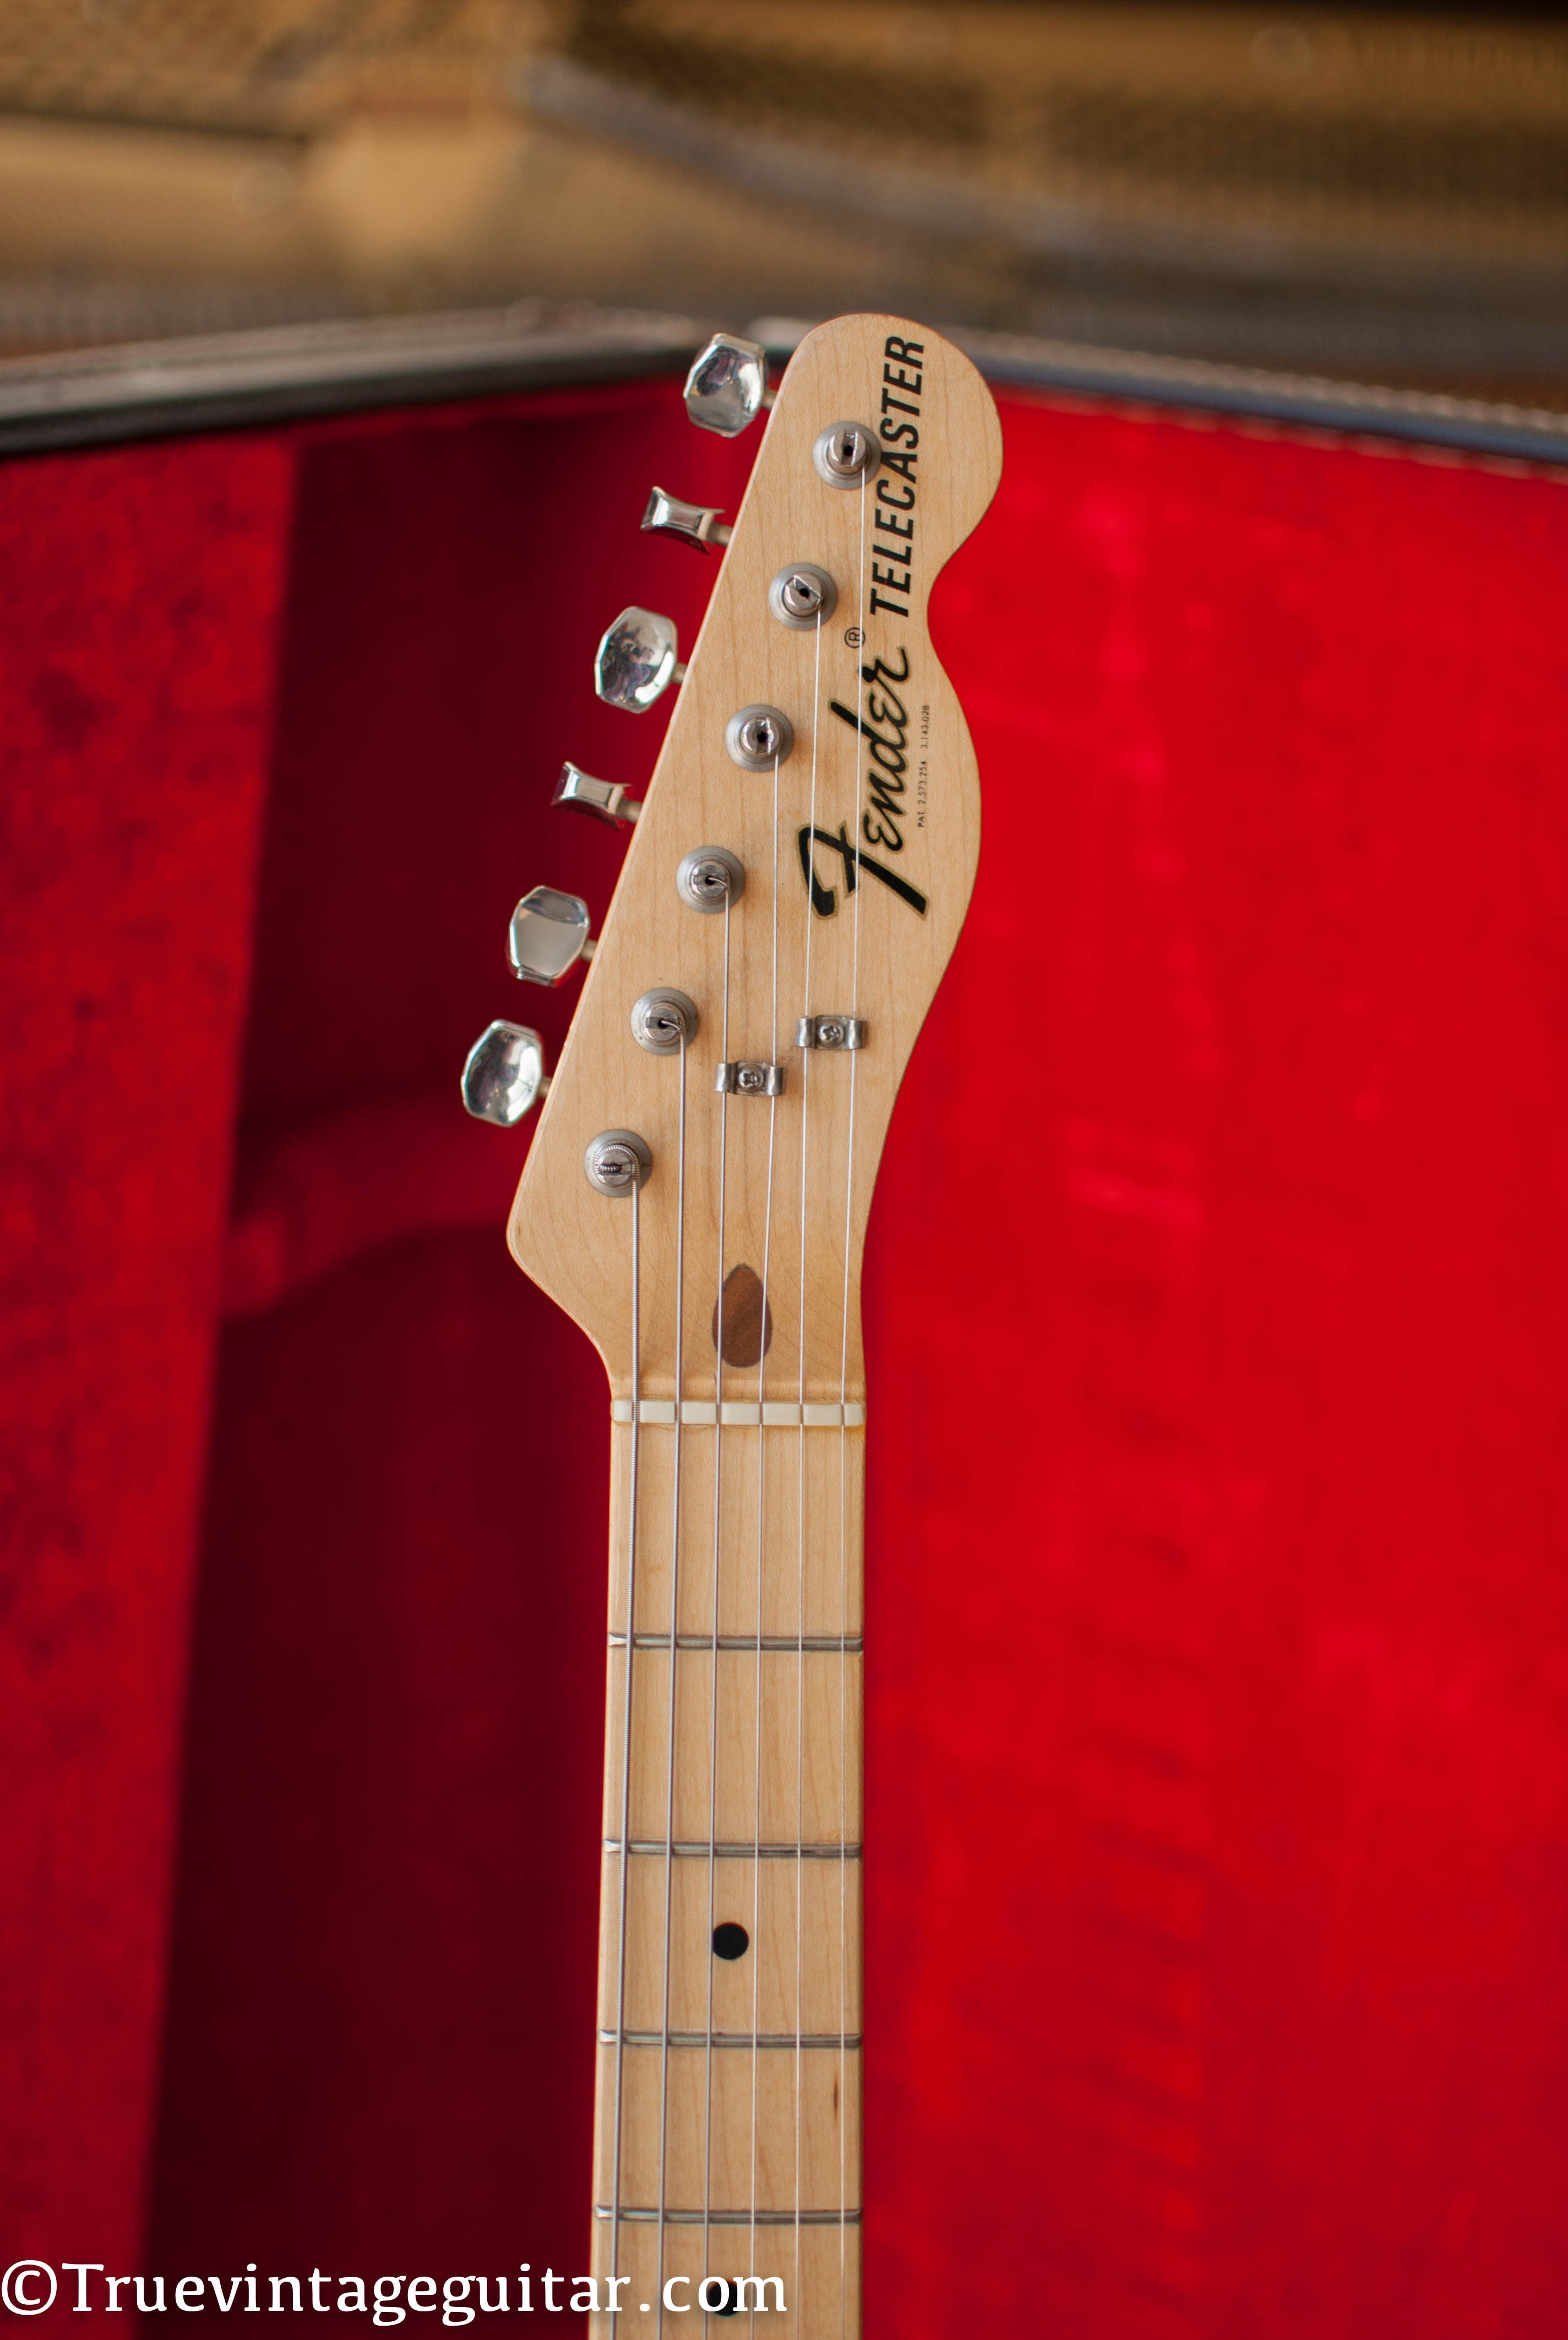 Vintage 1973 Fender Telecaster Guitar